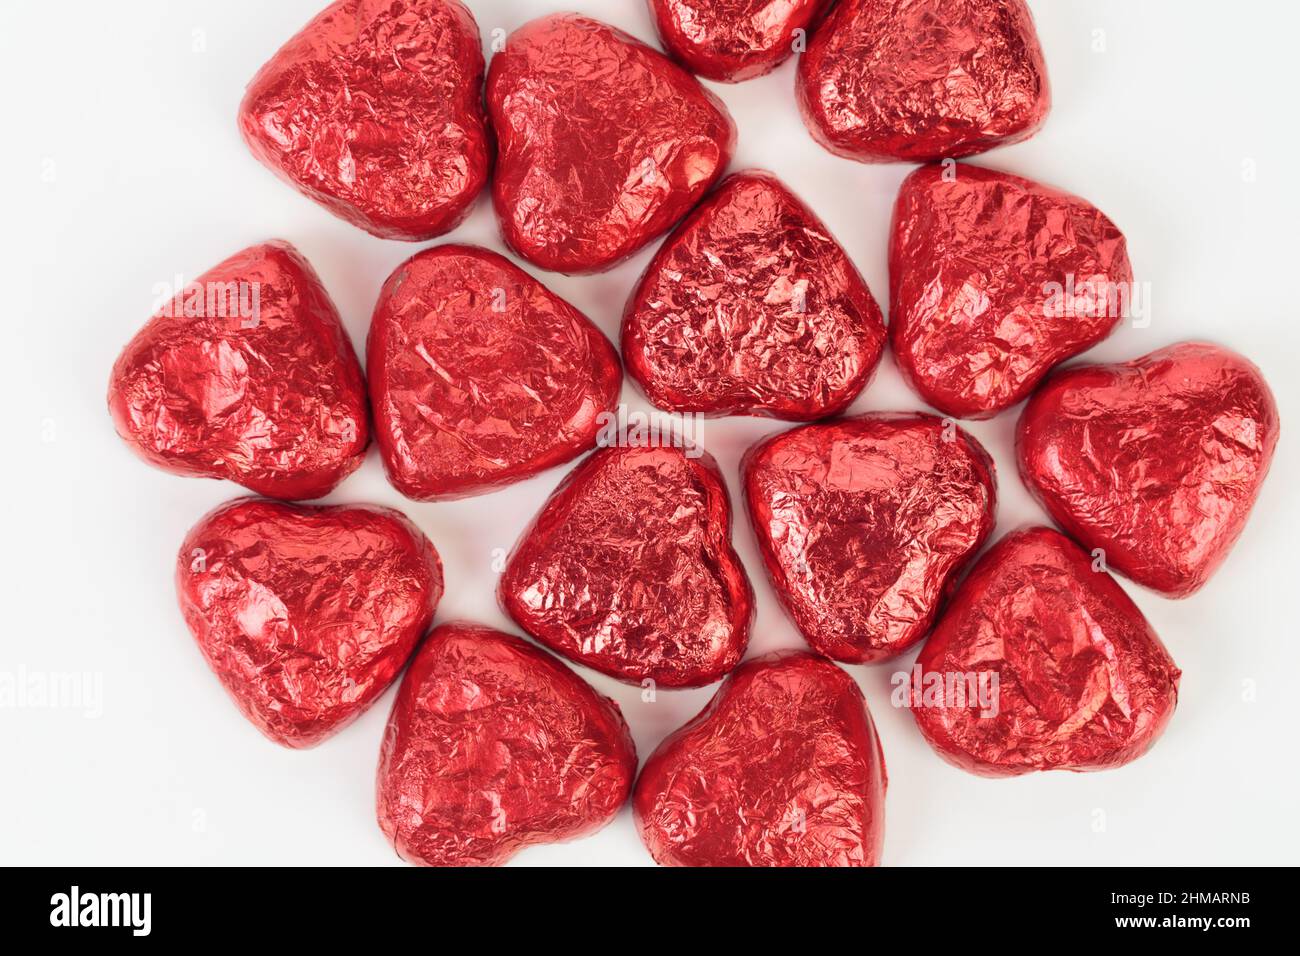 Bonbons au chocolat en forme de coeur enveloppés de papier d'aluminium rouge. Il est situé sur une surface blanche. Gros plan. Banque D'Images